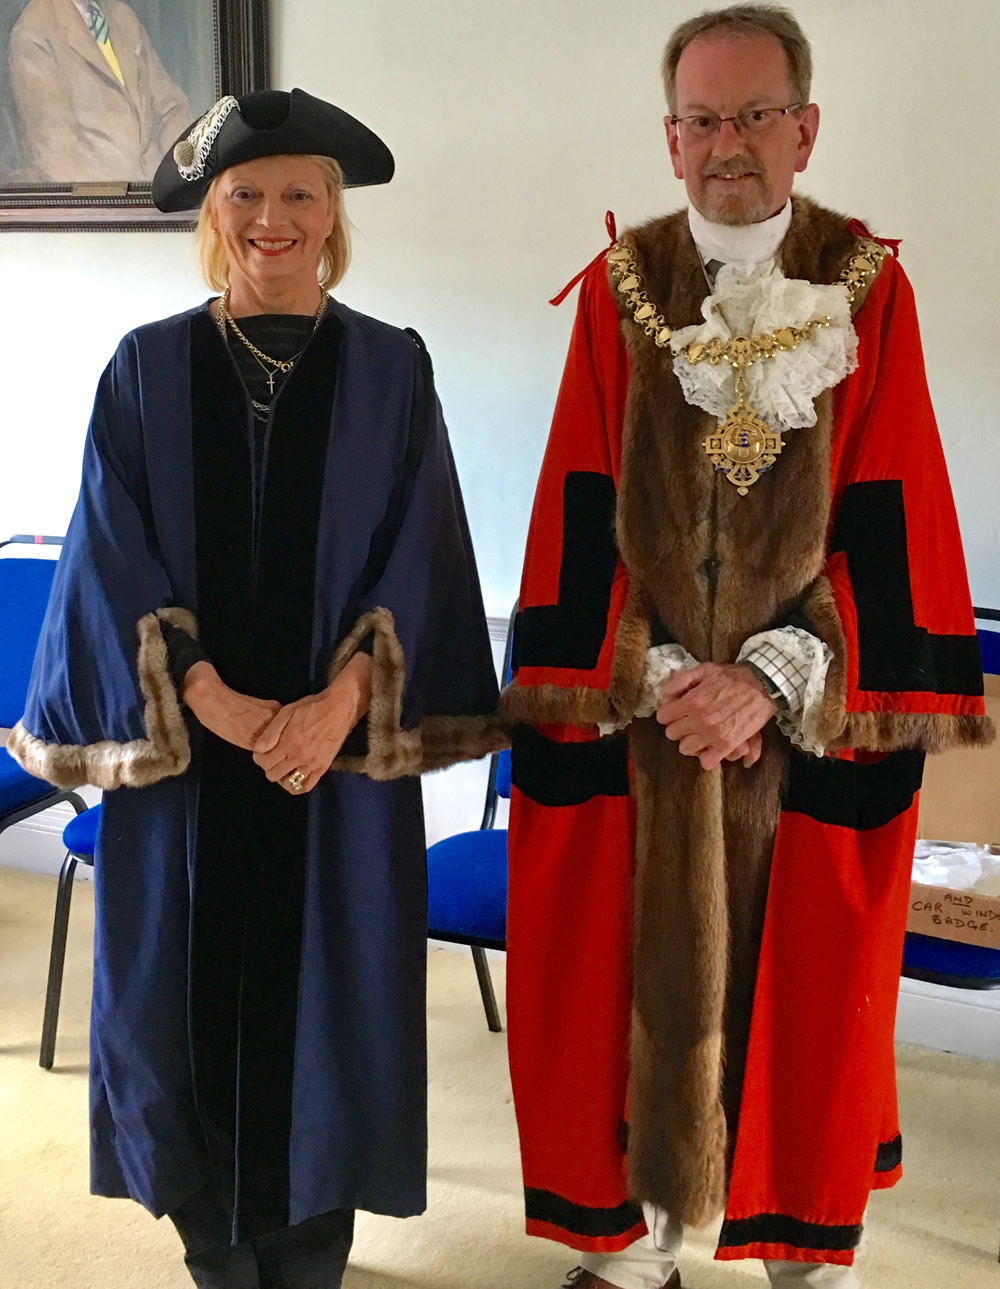 Deputy Mayor and Mayor of Tenterden